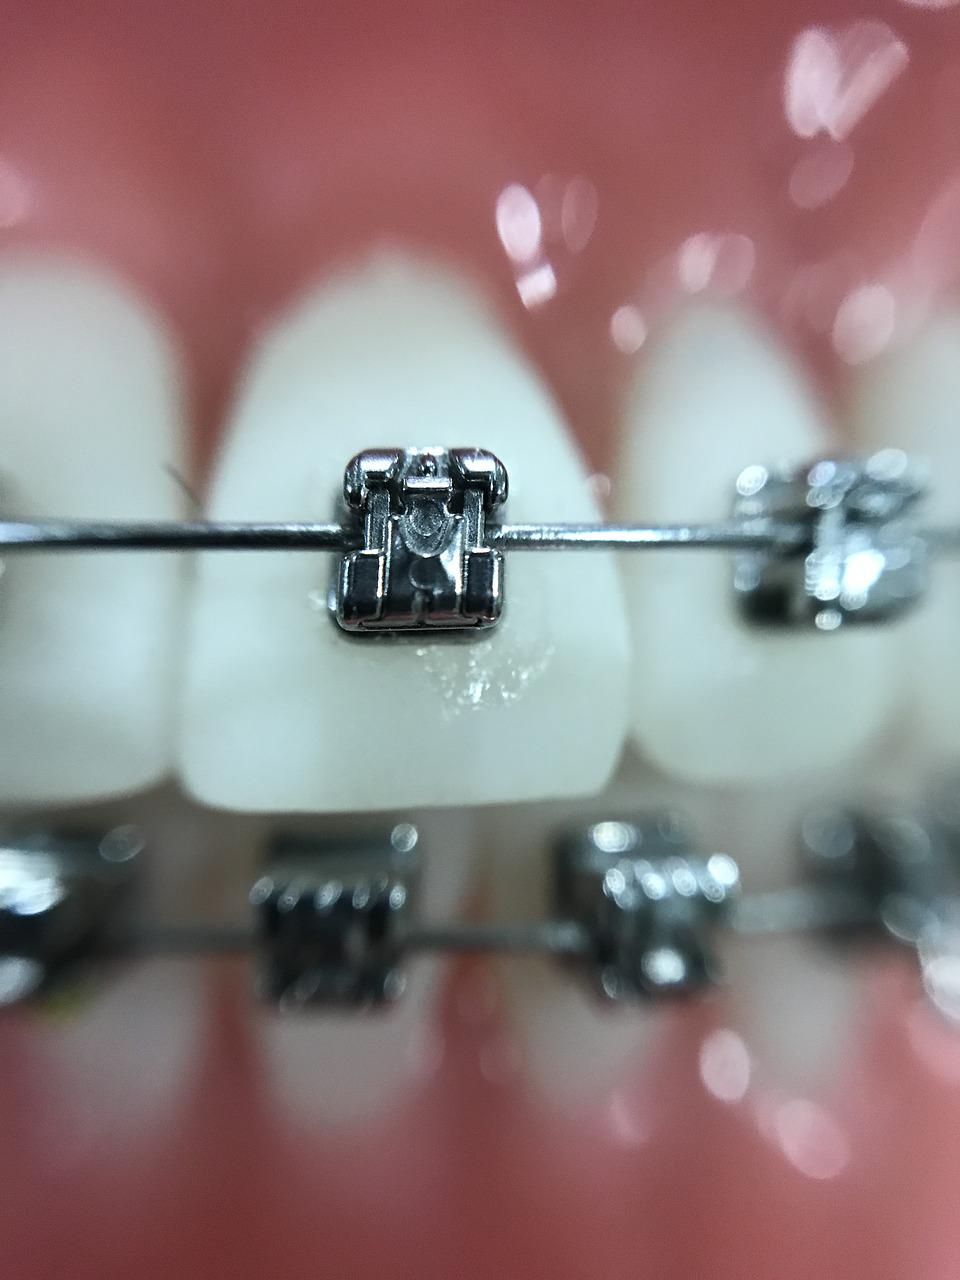 Brackets o Invisalign, ¿qué tipo de ortodoncia te interesa más?